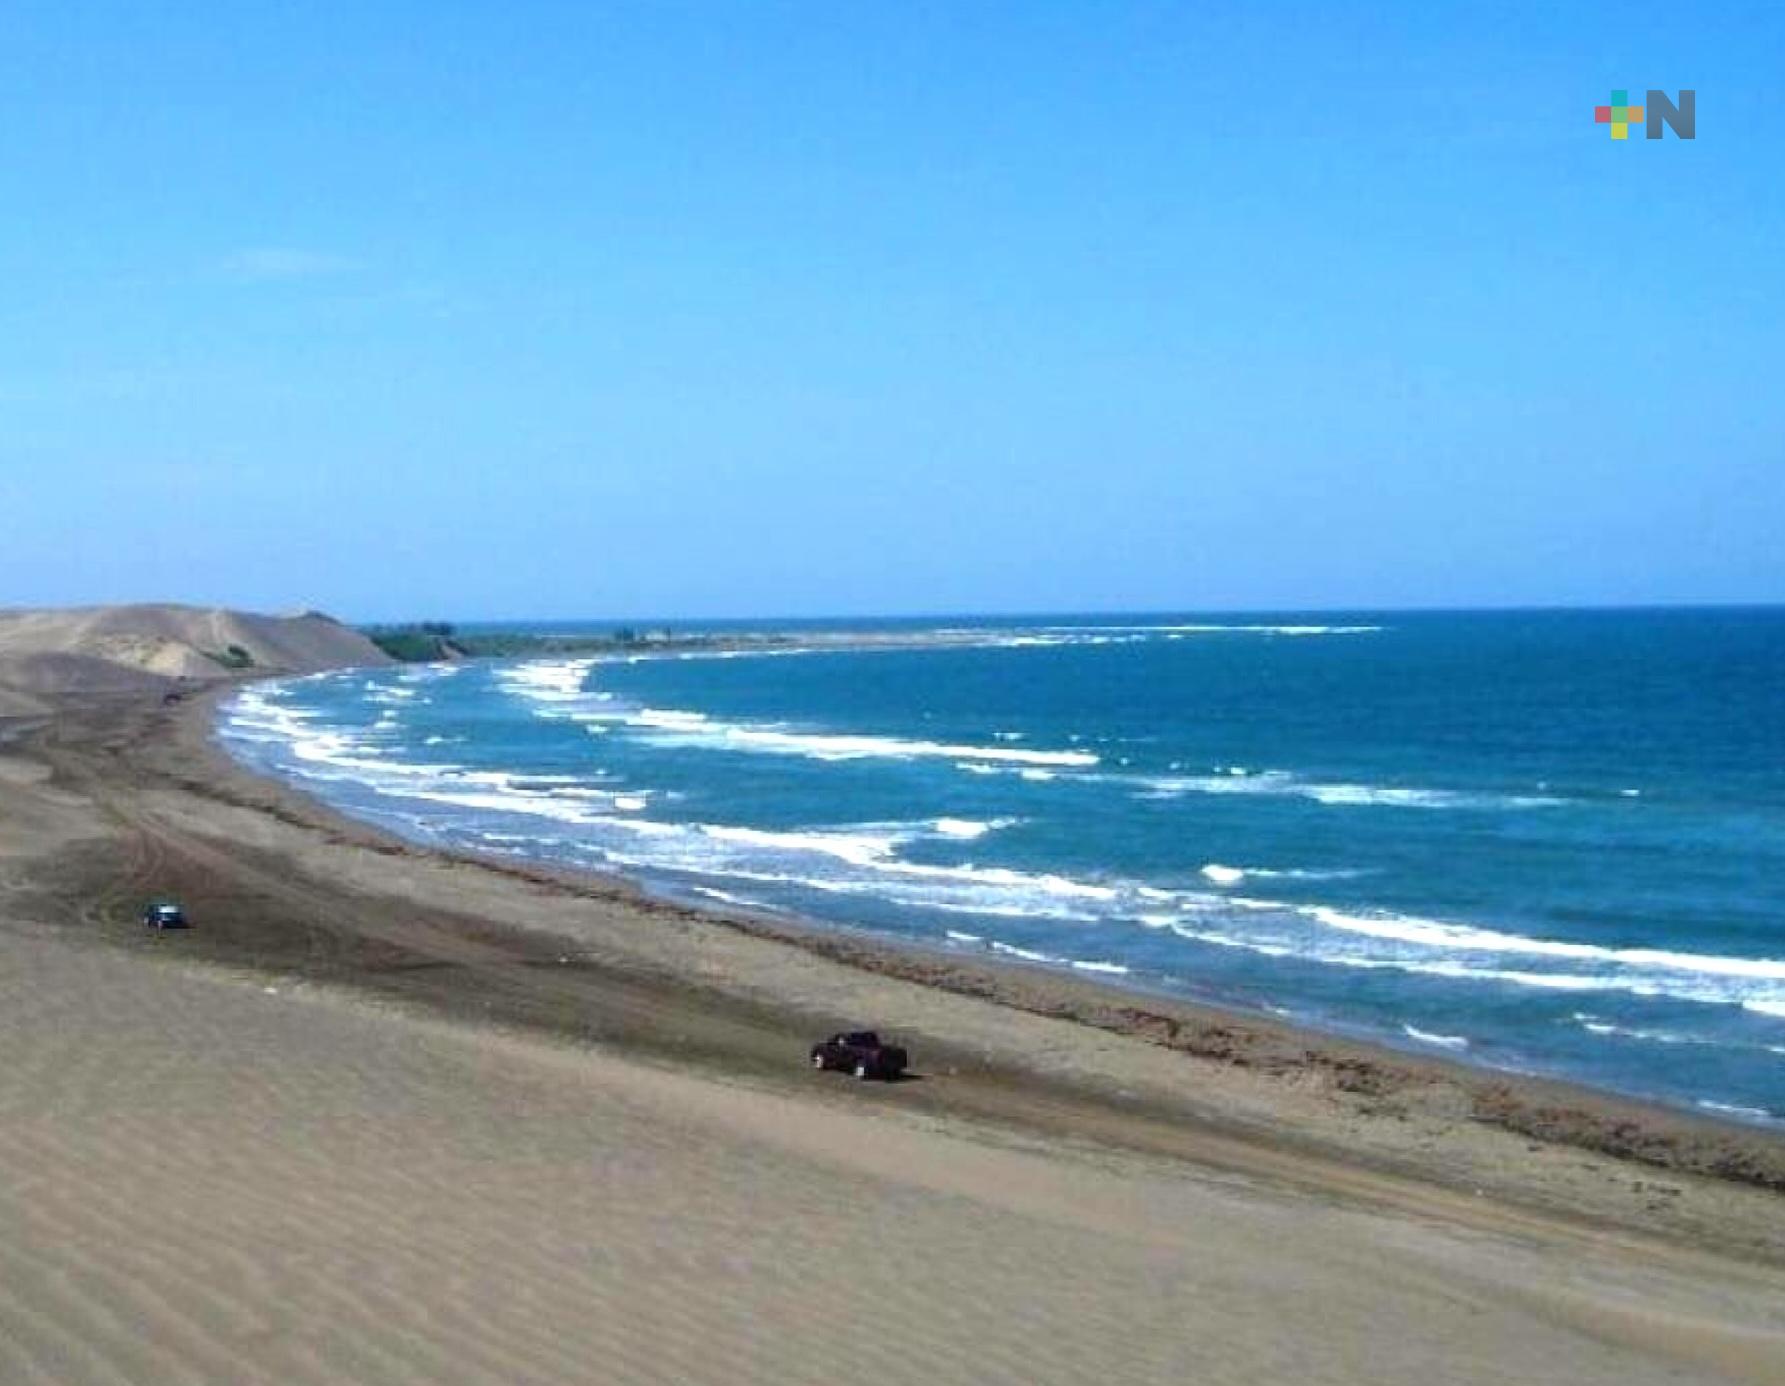 Turismo puede visitar con confianza playas de Veracruz; son limpias y seguras